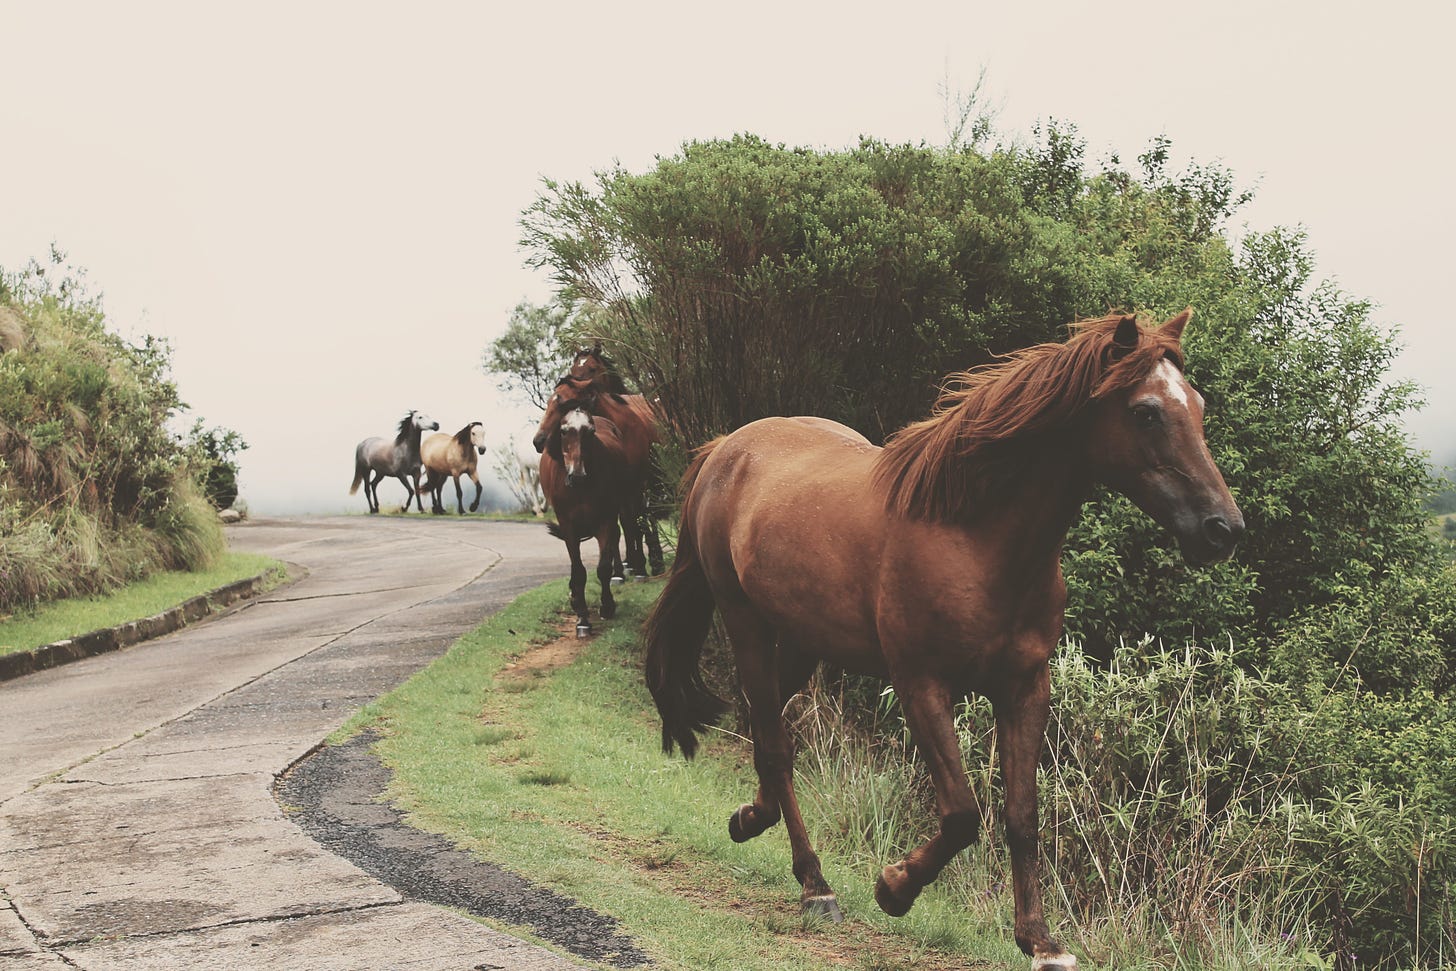 Photo of horses trotting alongside a path by Cristy Zinn on Unsplash.